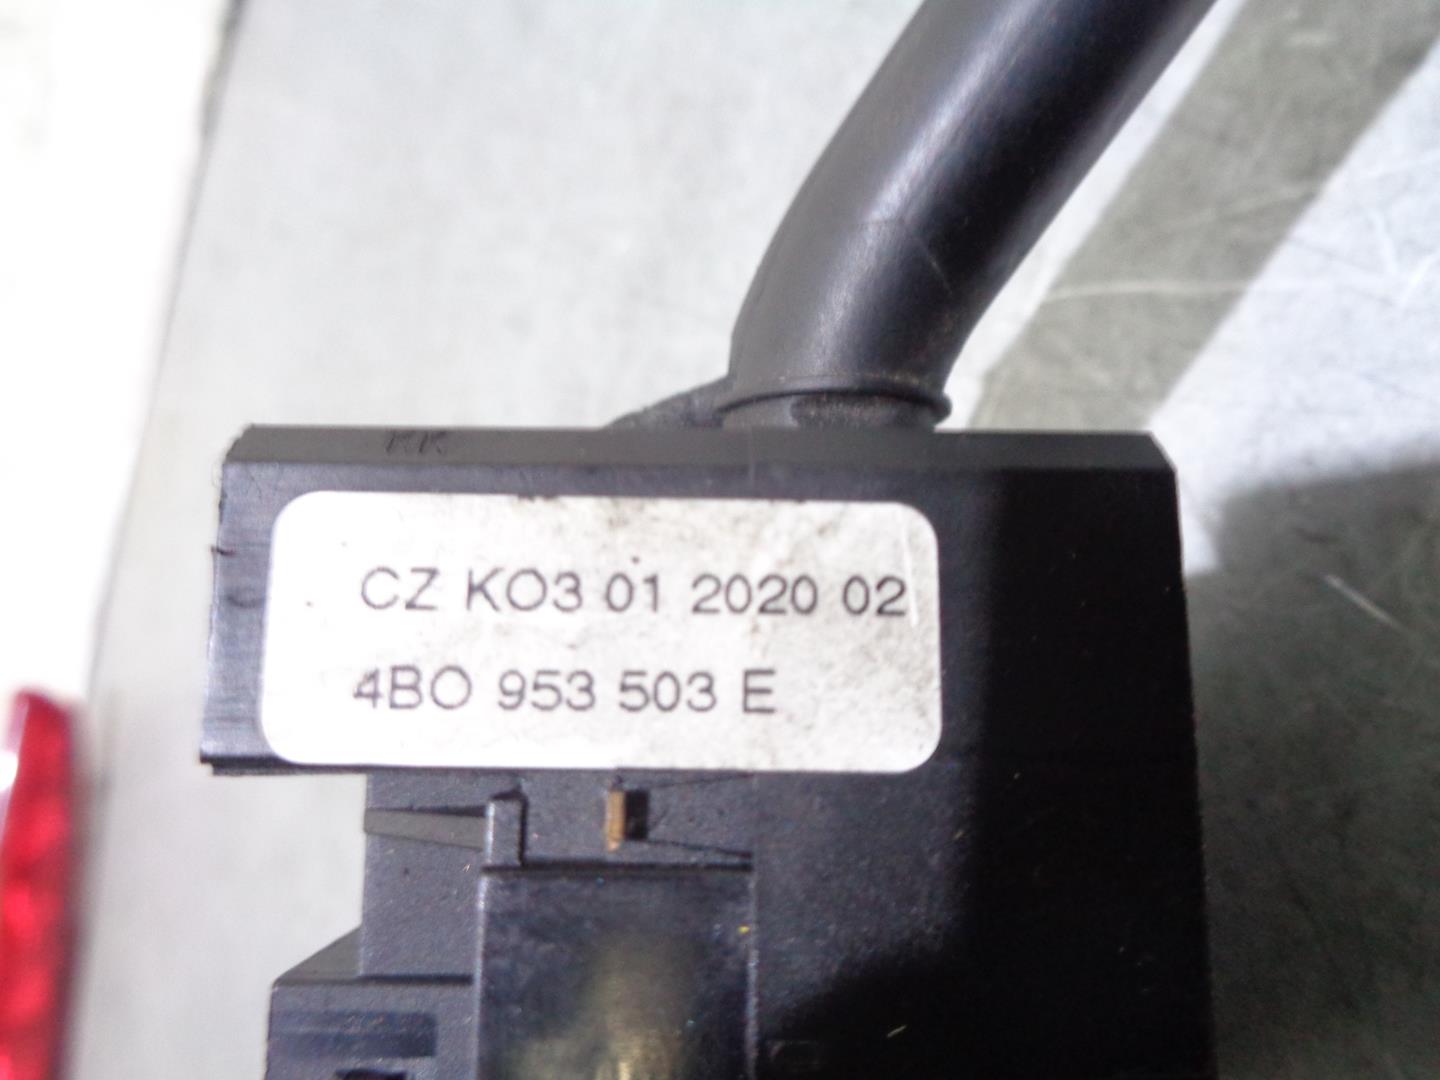 AUDI TT 8N (1998-2006) Headlight Switch Control Unit 8L0953513G, 4BO953503E 19823499